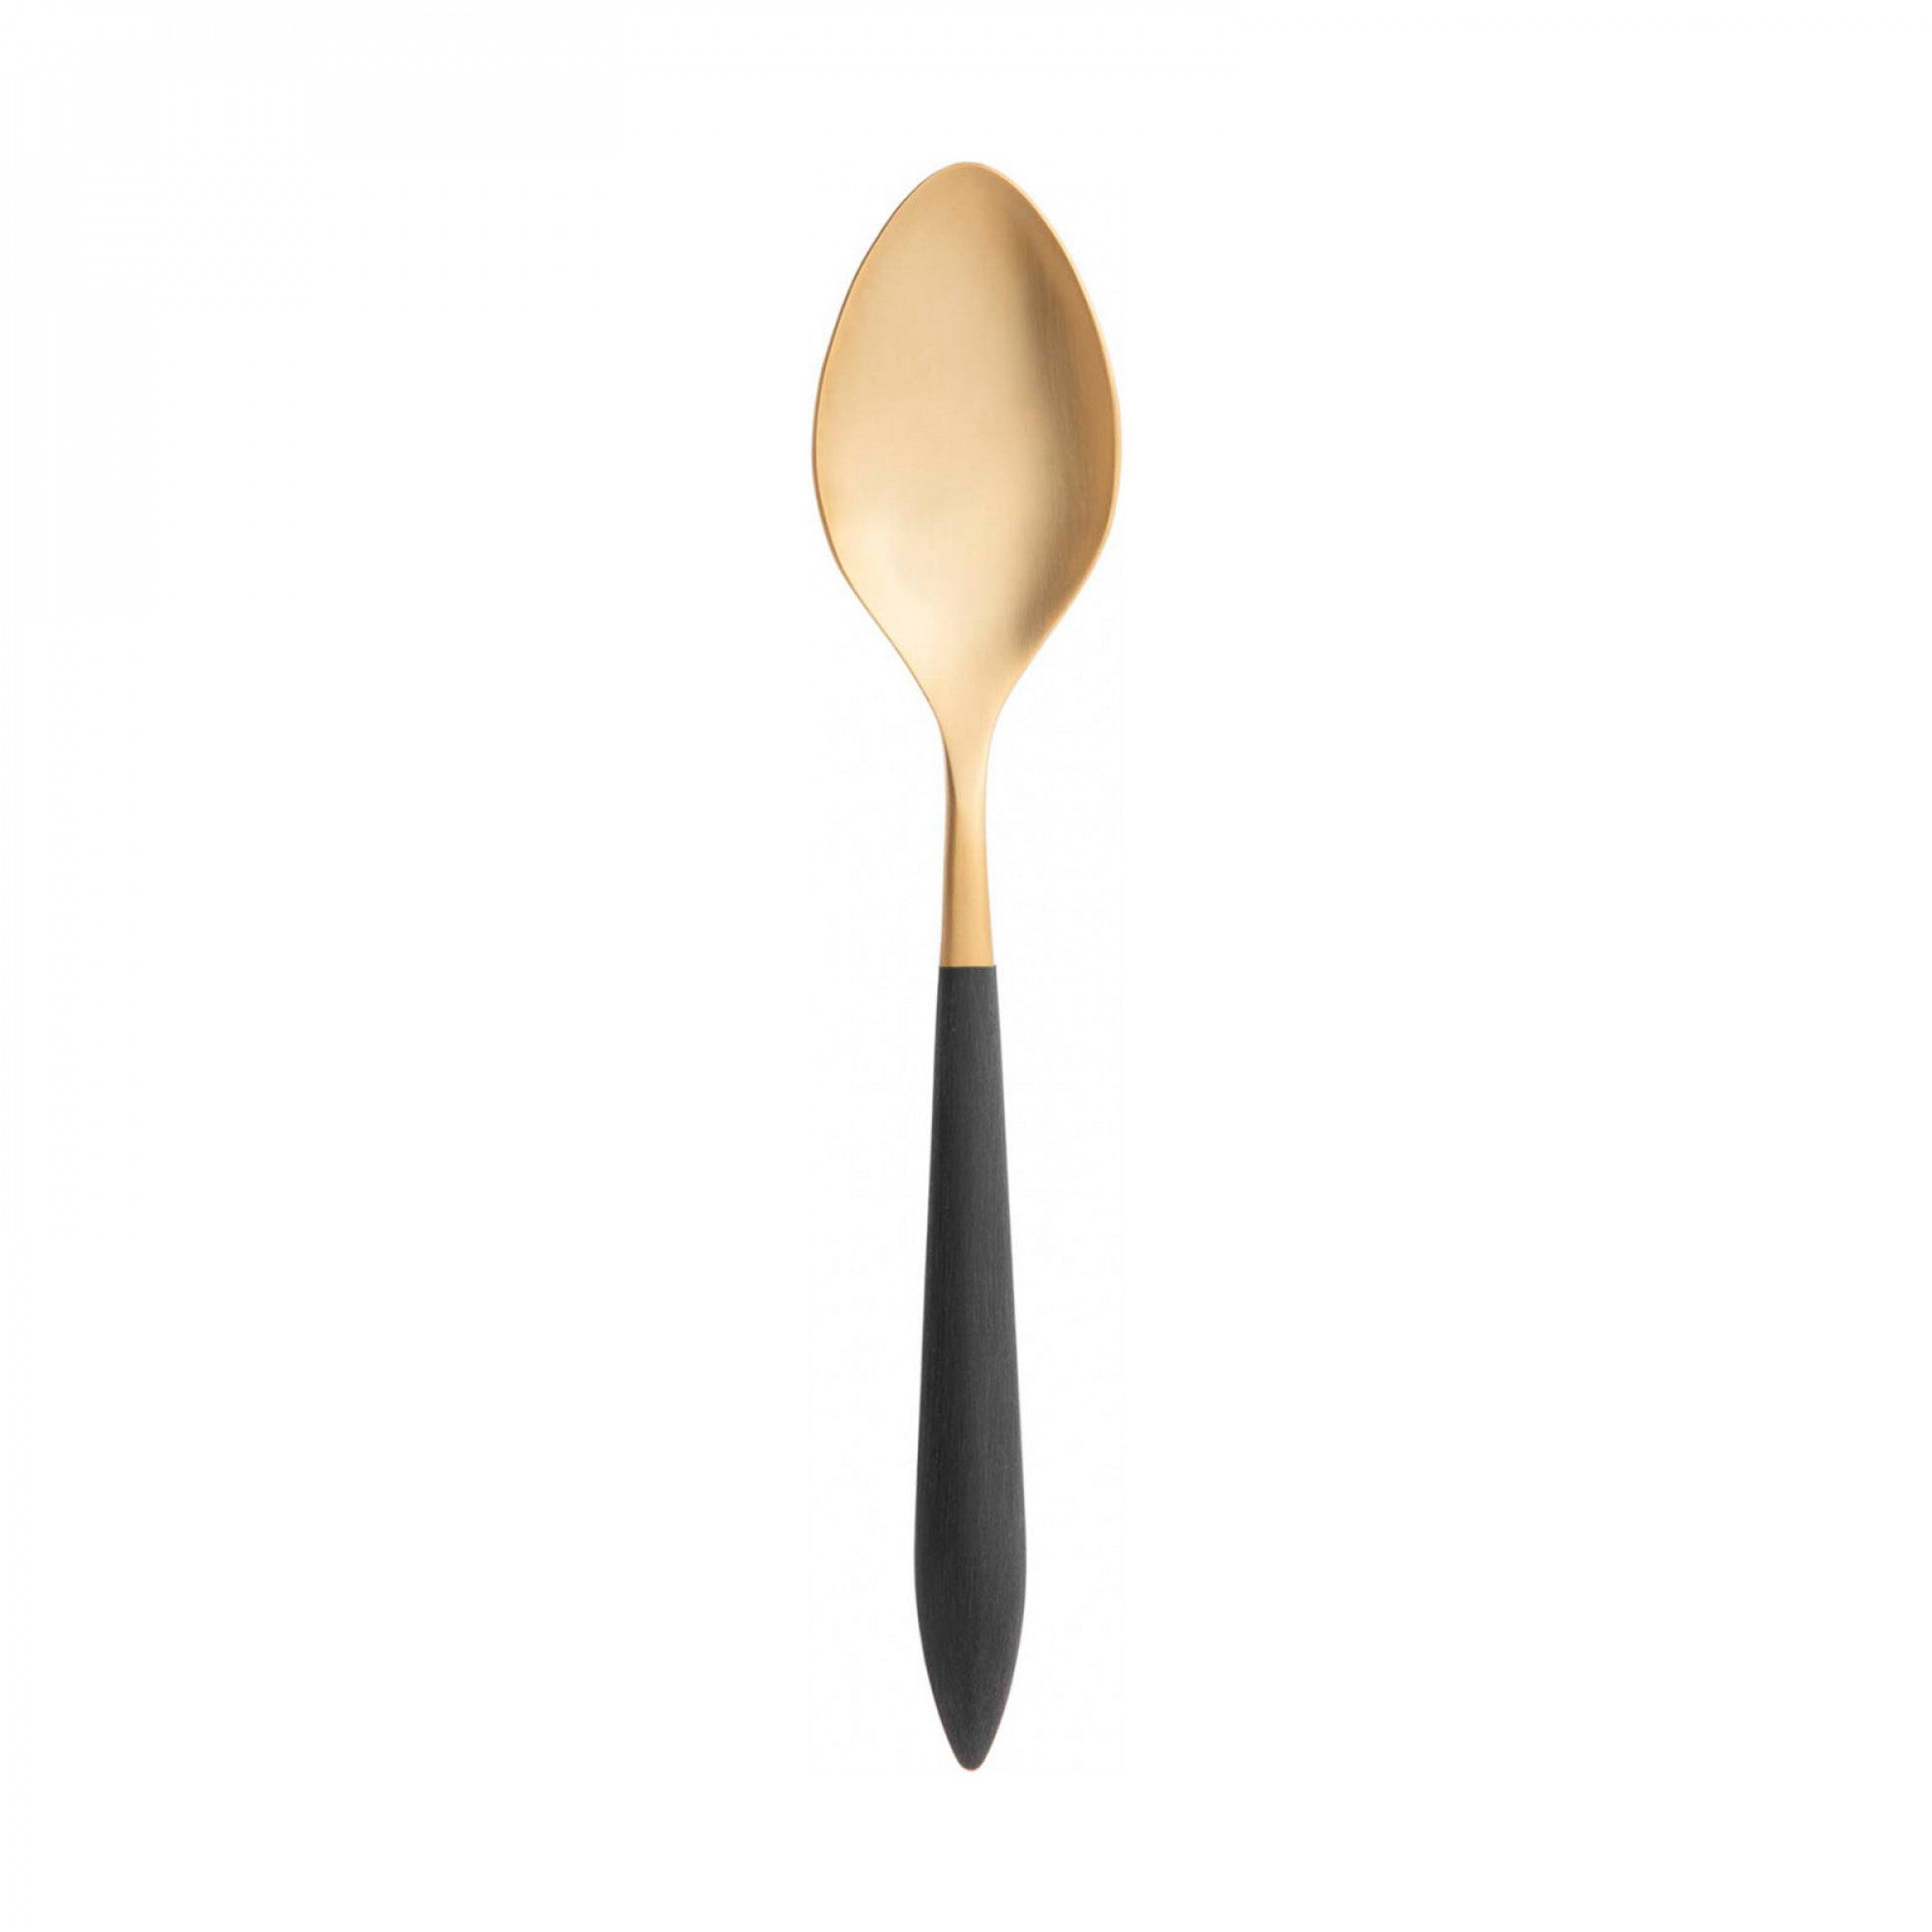 Ares Gold Moka Spoon